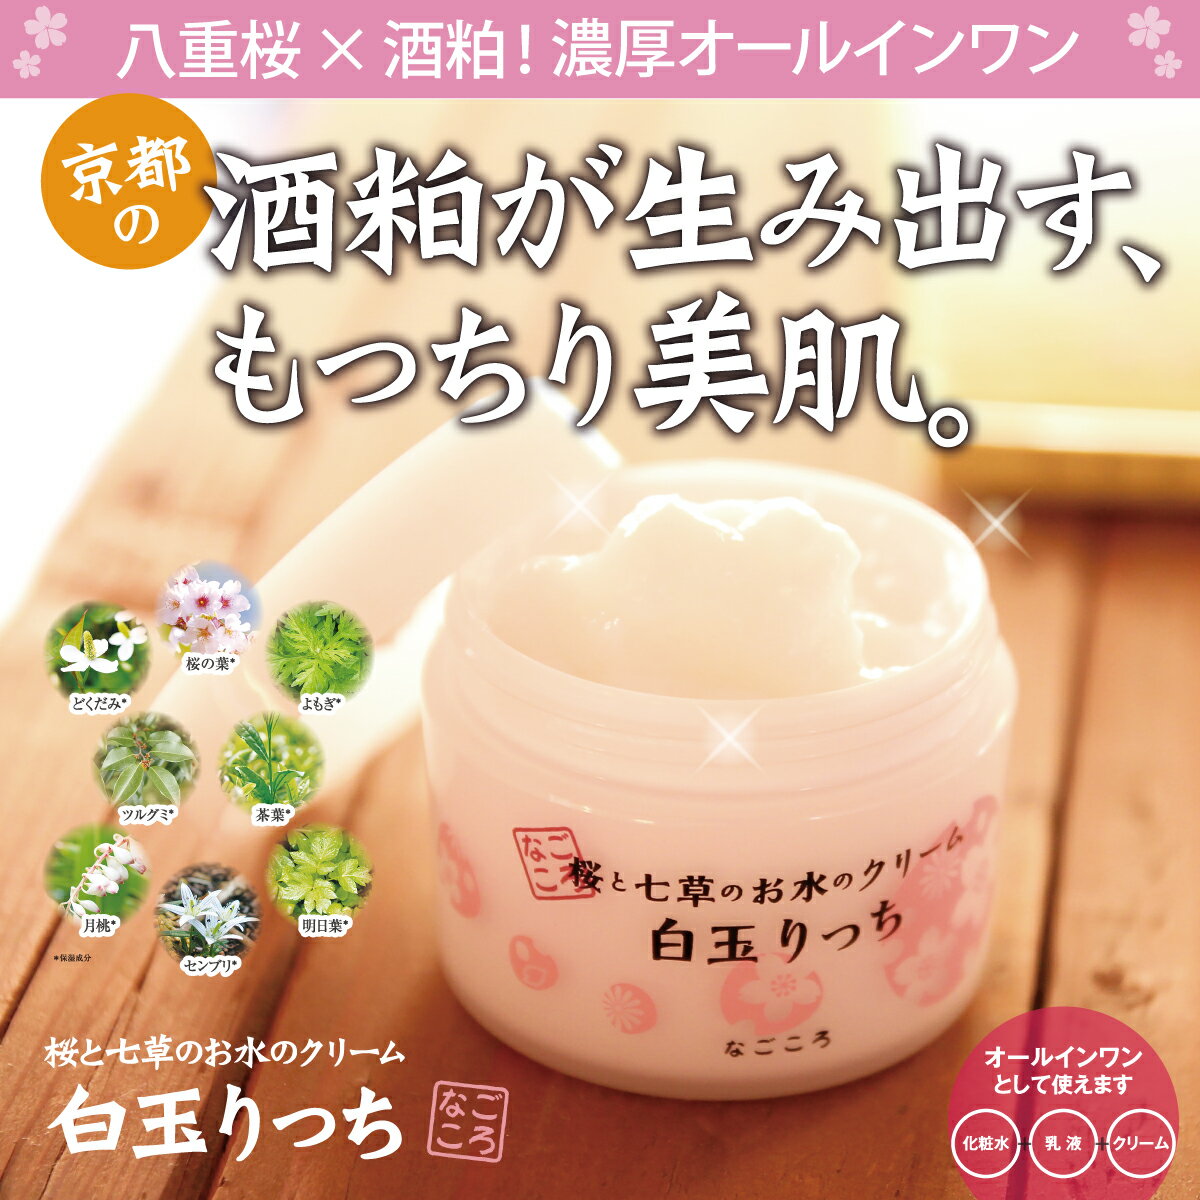 なごころ化粧品『桜と七草のお水のクリーム白玉りっち』